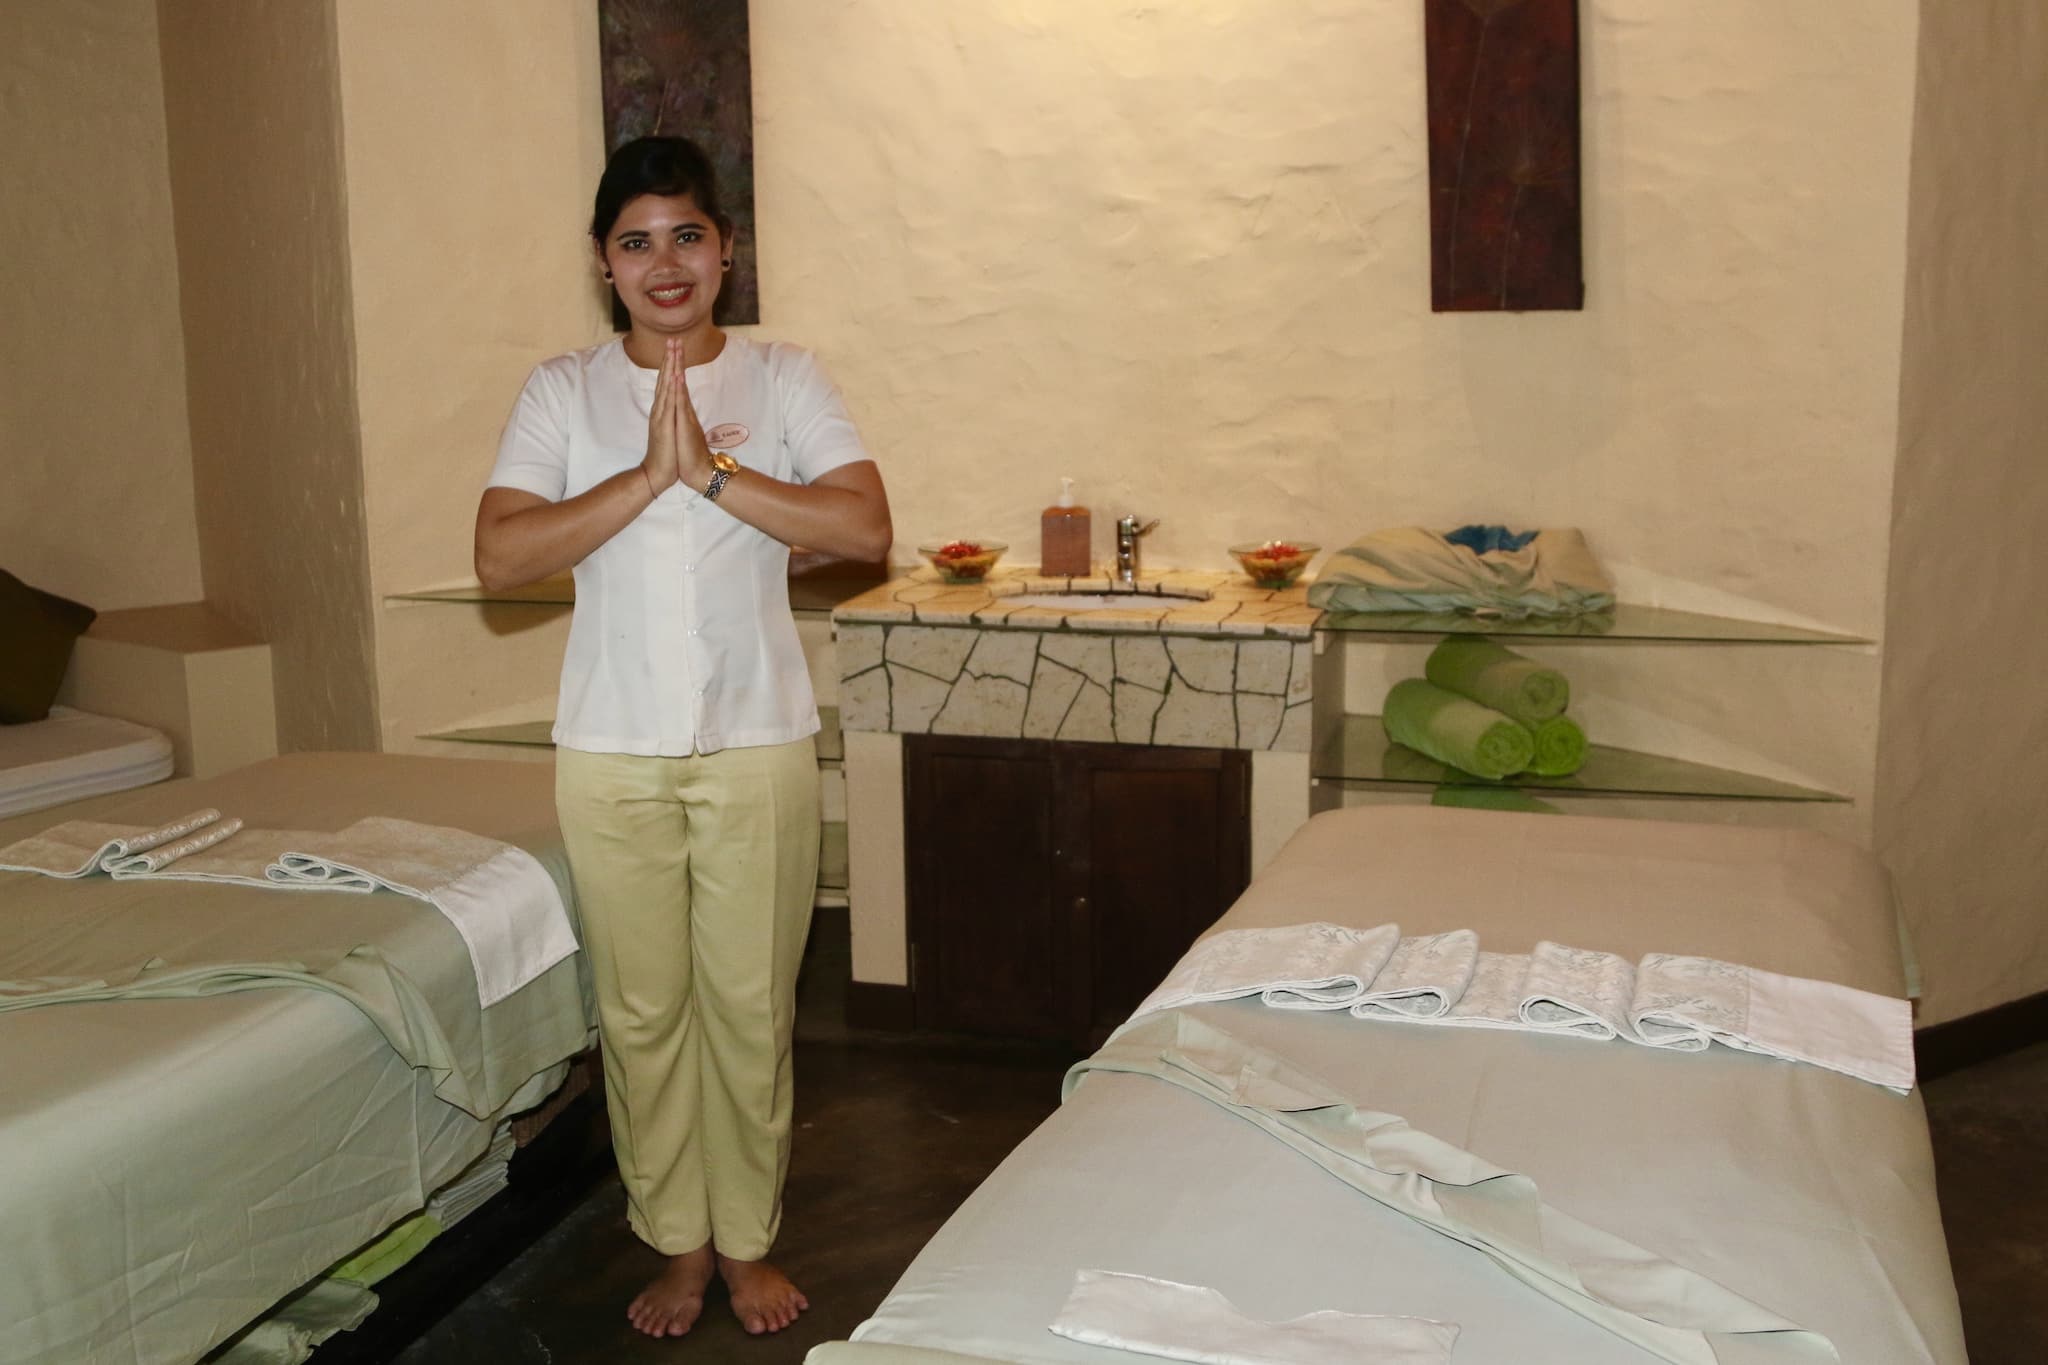 Erholgsfaktor deluxe: Auf den Resortinseln gibt es oftmals Wellness-Center, in denen Massagen und Anwendungen angeboten werden. Foto: Sascha Tegtmeyer Reisebericht Malediven Tipps